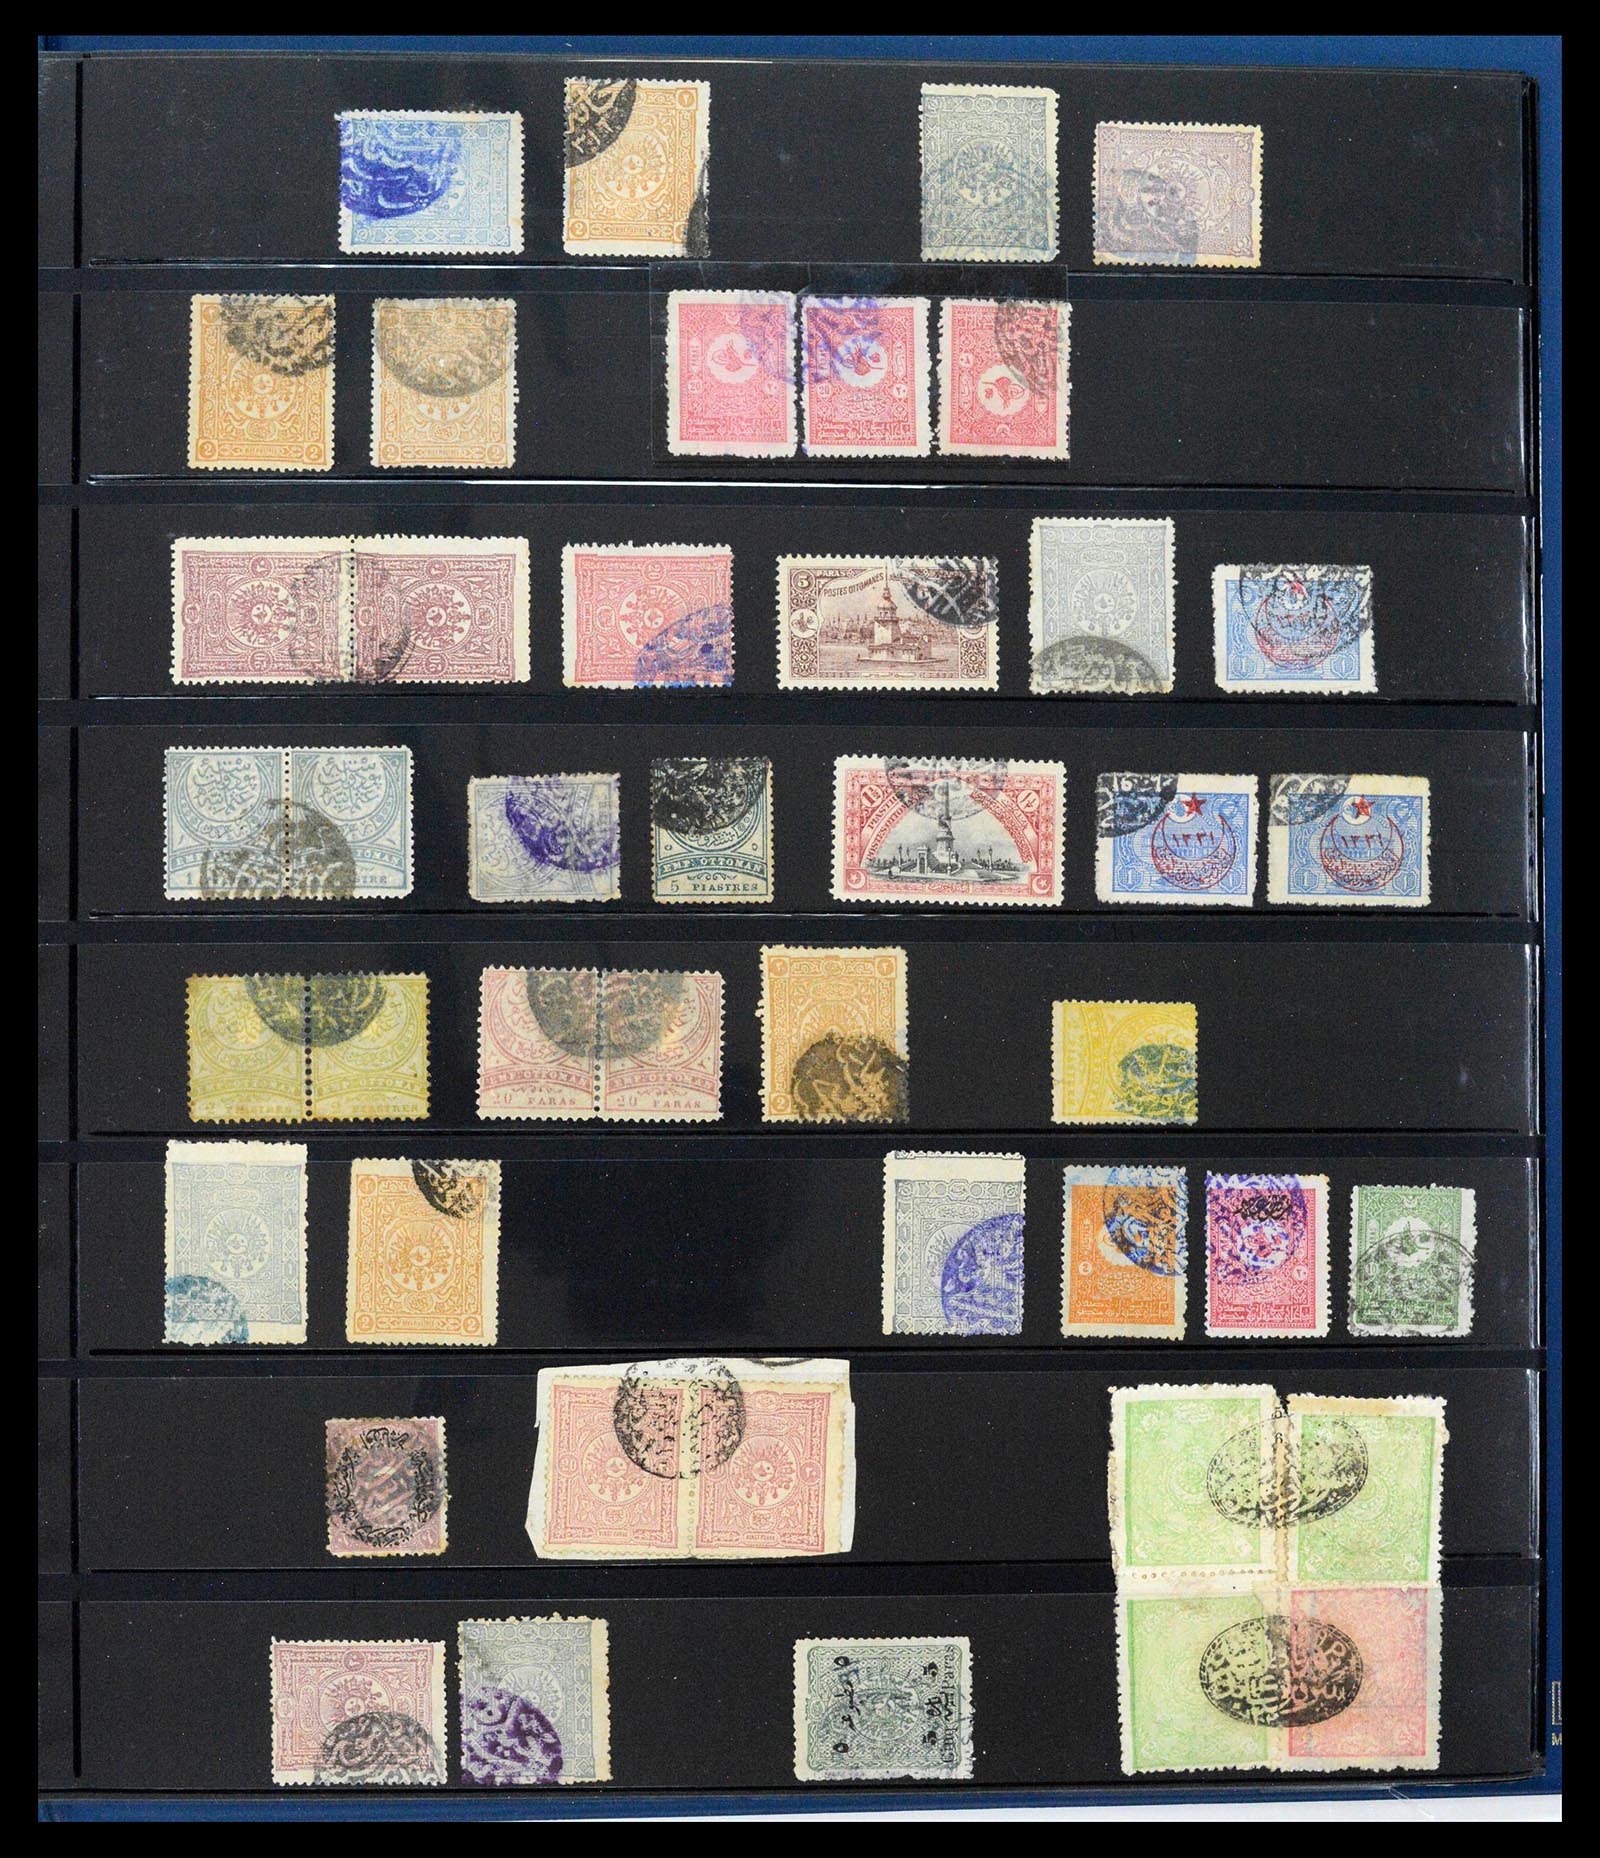 39345 0423 - Postzegelverzameling 39345 Turkije supercollectie stempels 1865-1930.